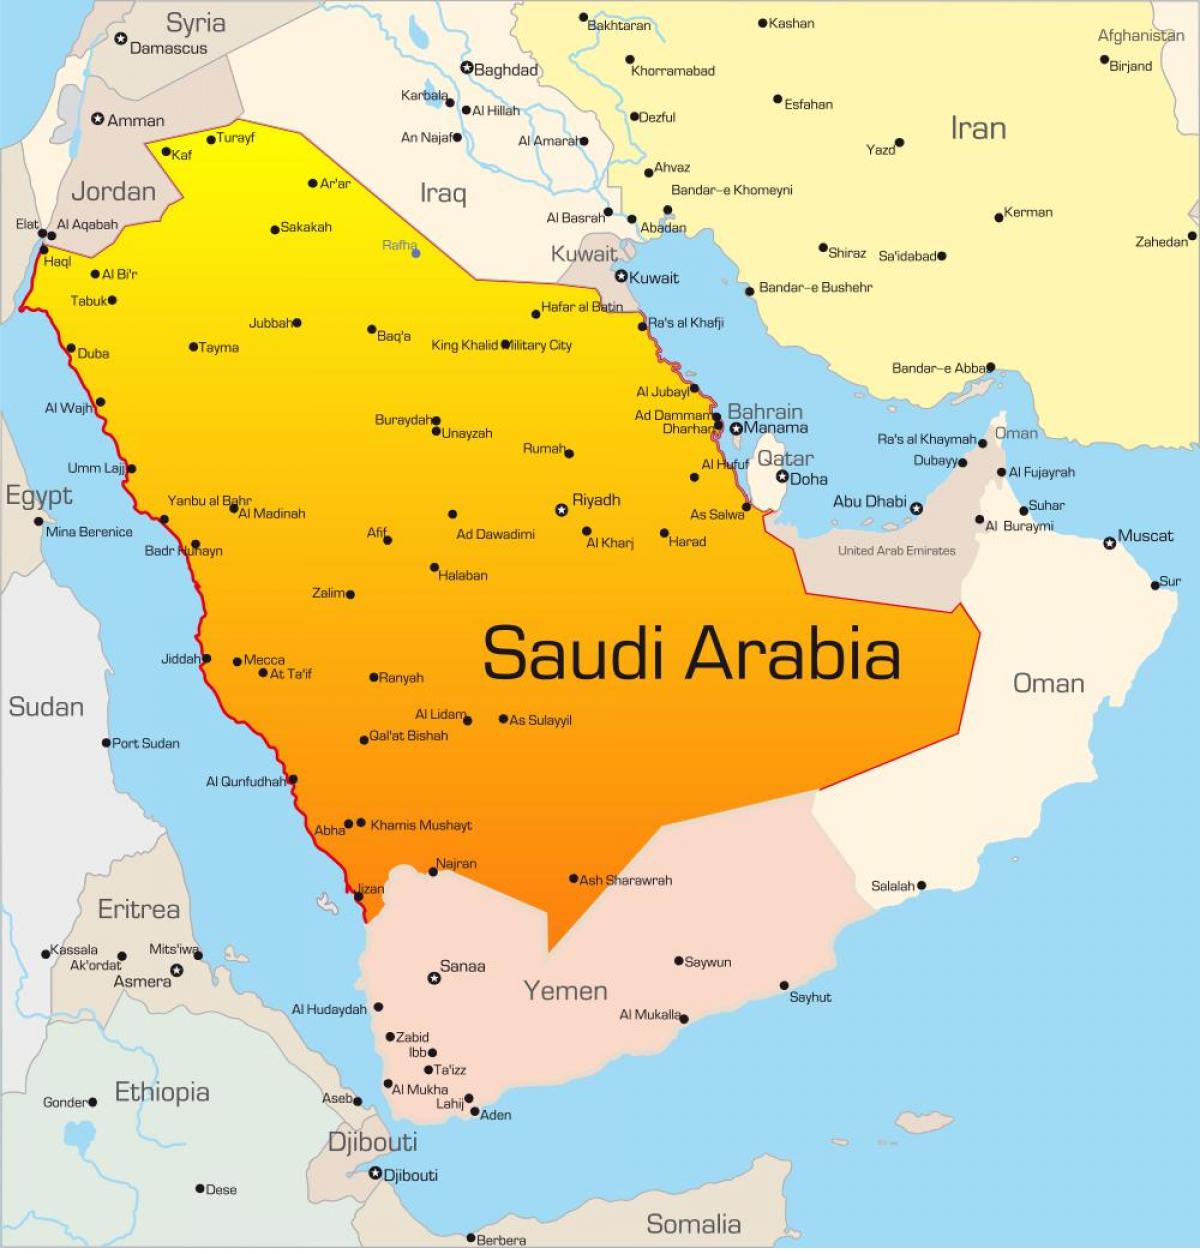 Makkah saudi arabia ramani